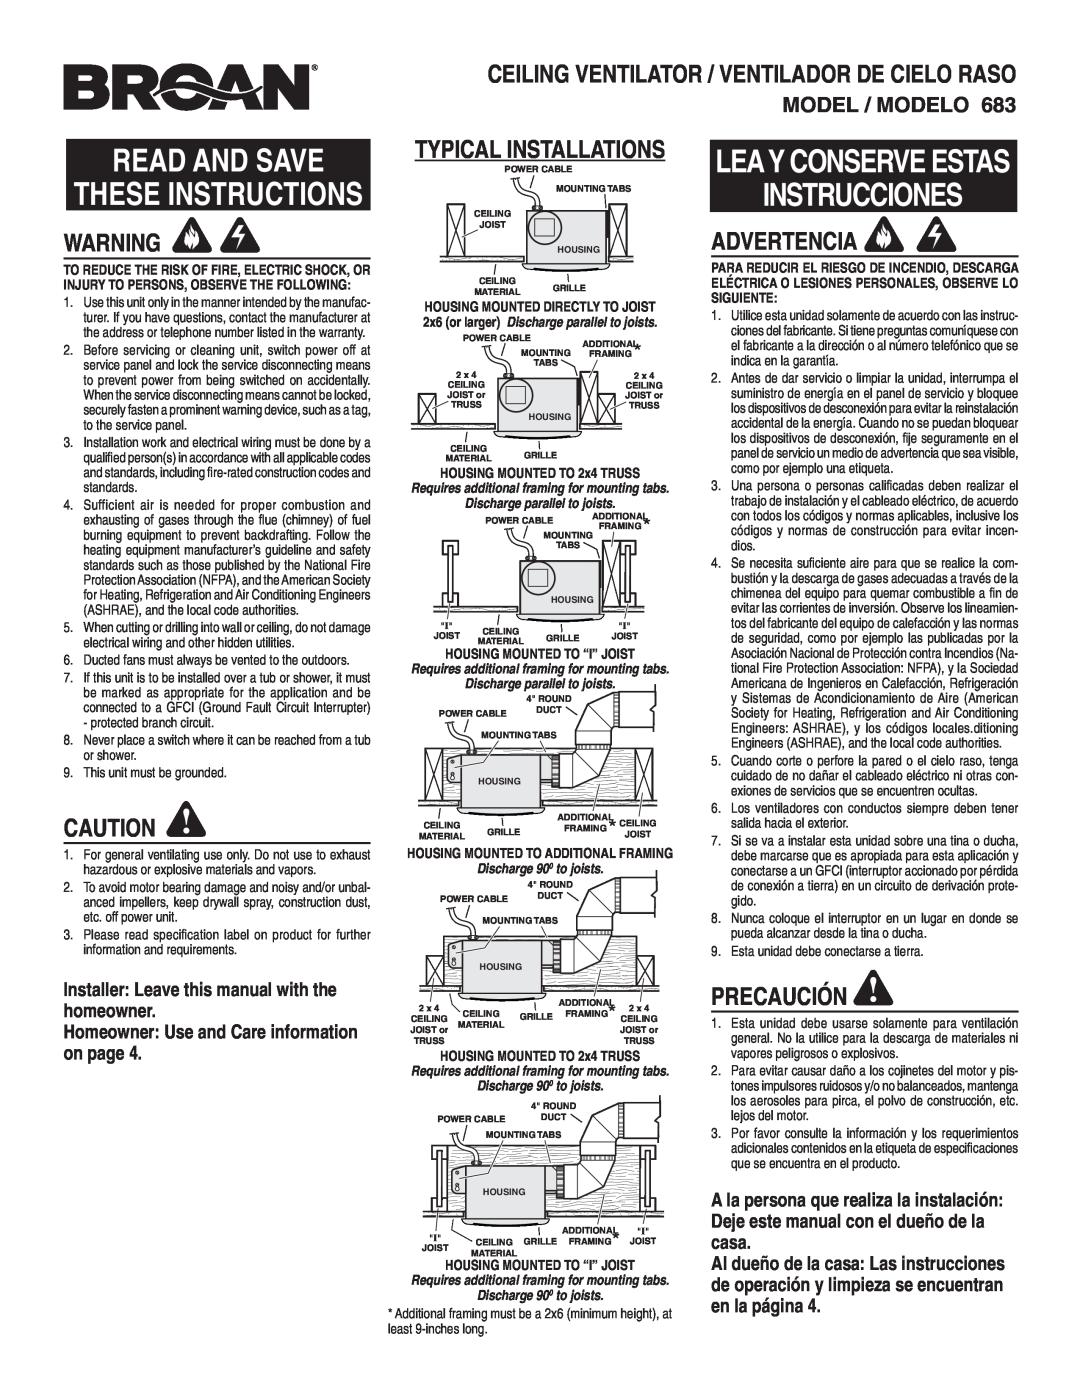 Broan 683 warranty Advertencia, Precaución, Ceiling Ventilator / Ventilador De Cielo Raso, Typical Installations 